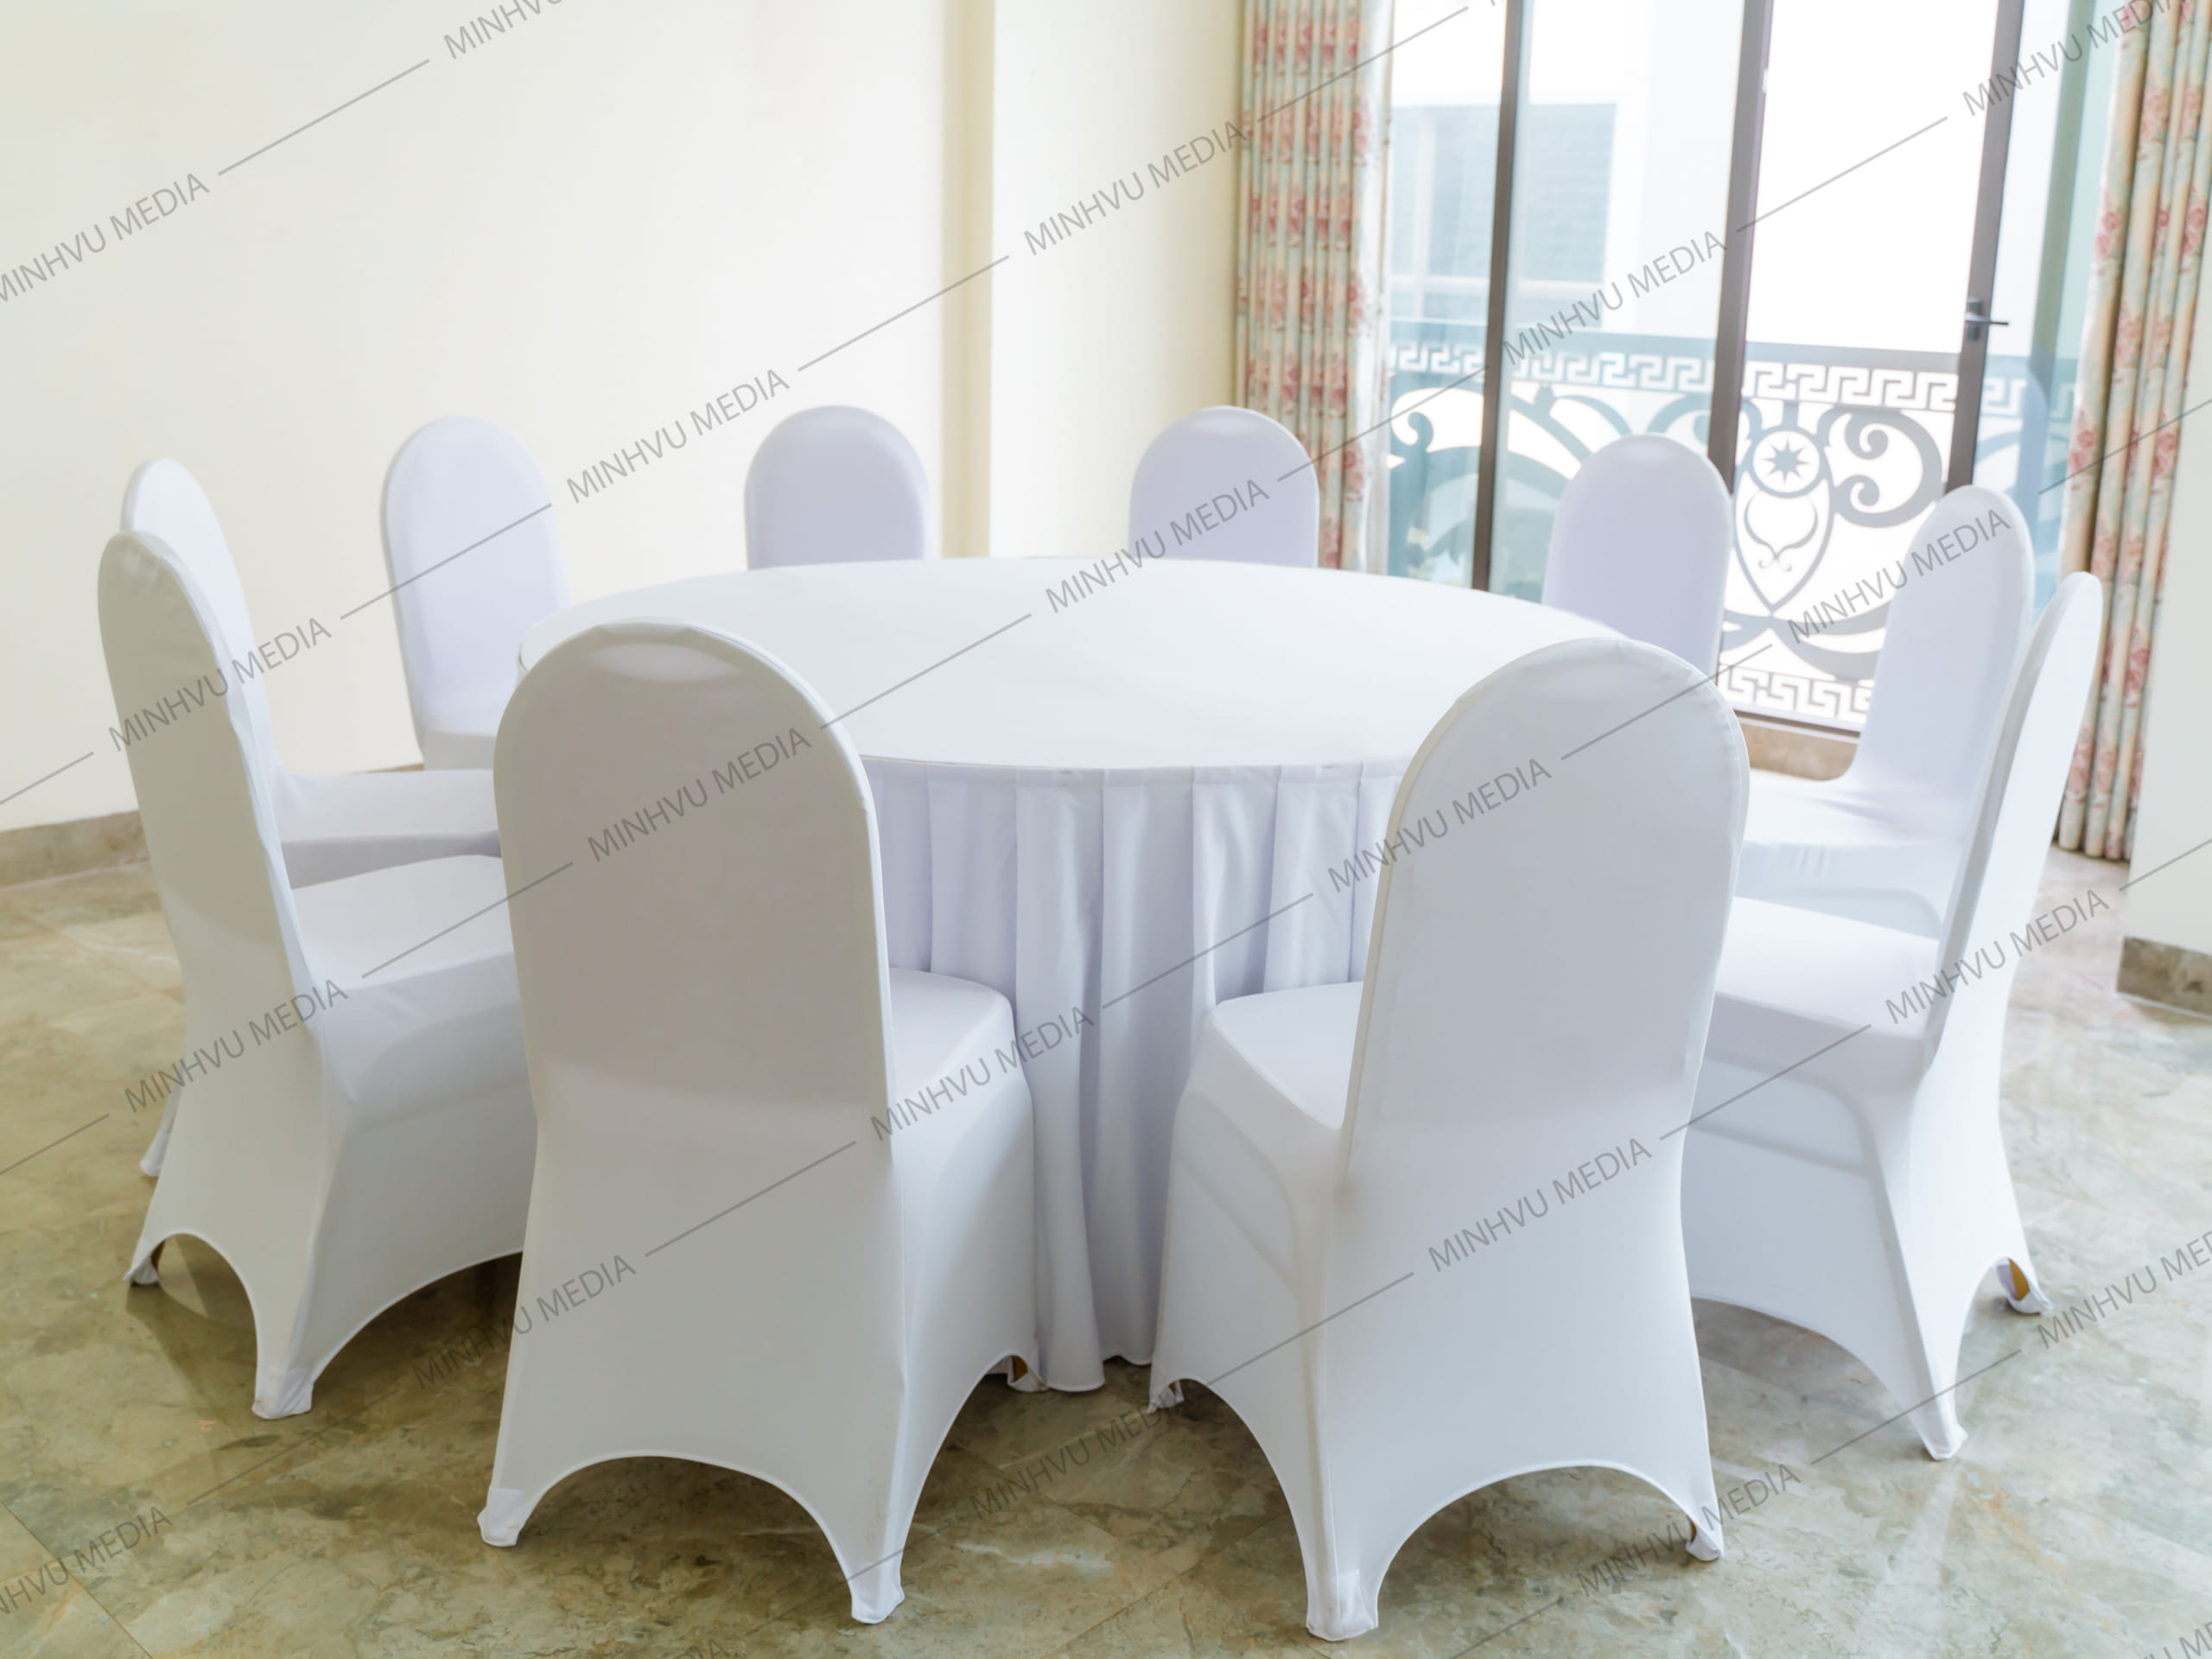 Ghế không gập Xuân Hoà kèm áo ghế trắng kết hợp với bàn tròn kèm khăn phủ cùng màu